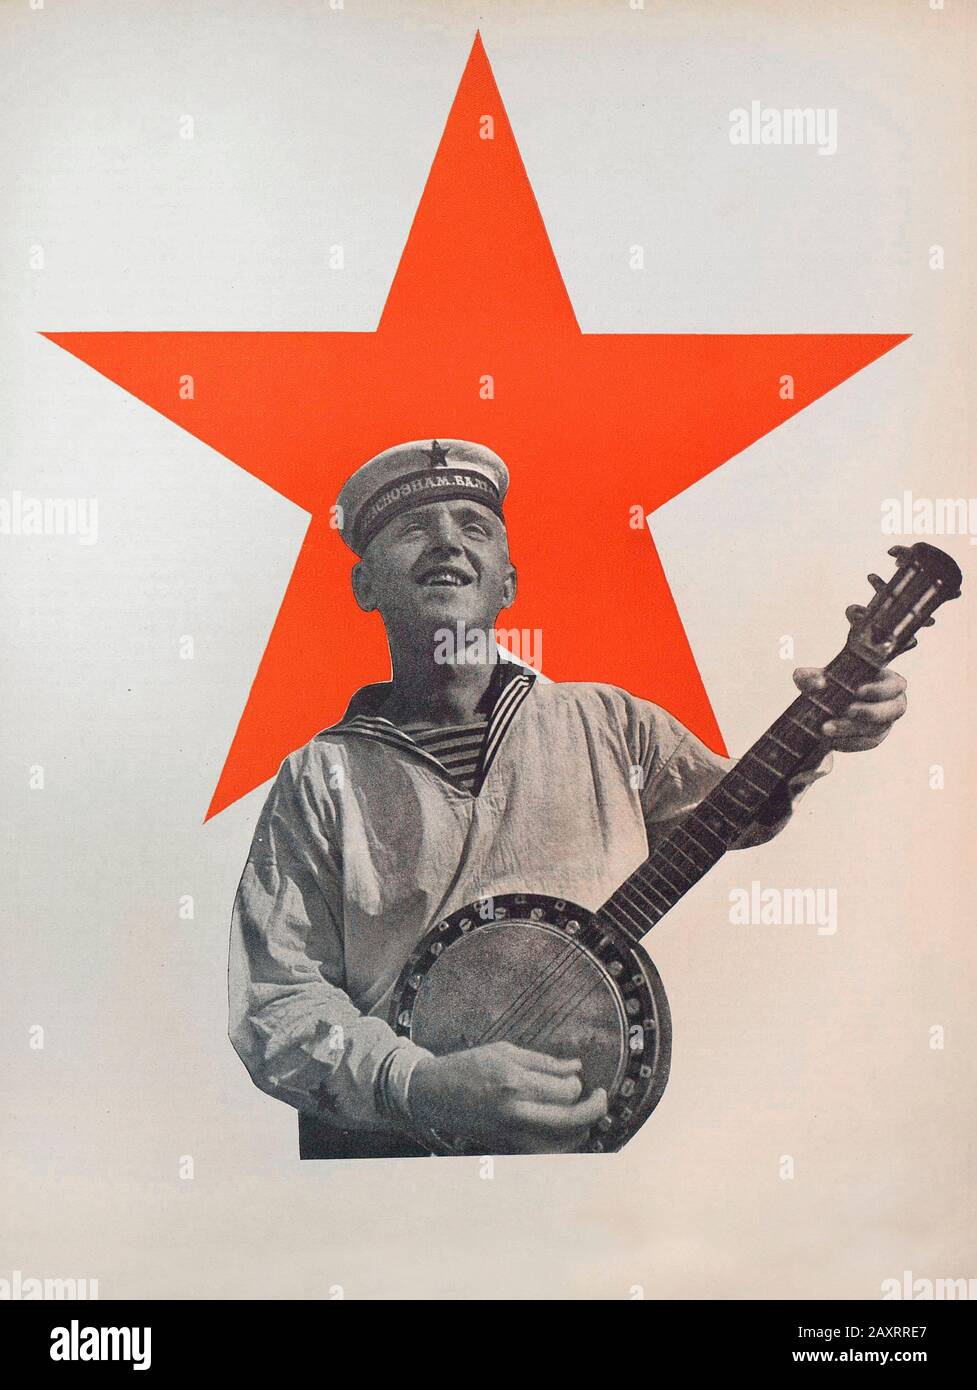 Esercito rosso in 1930s. Dal libro di propaganda sovietico del 1937. Soldato della marina sovietica sulla stella rossa bachground. Foto Stock